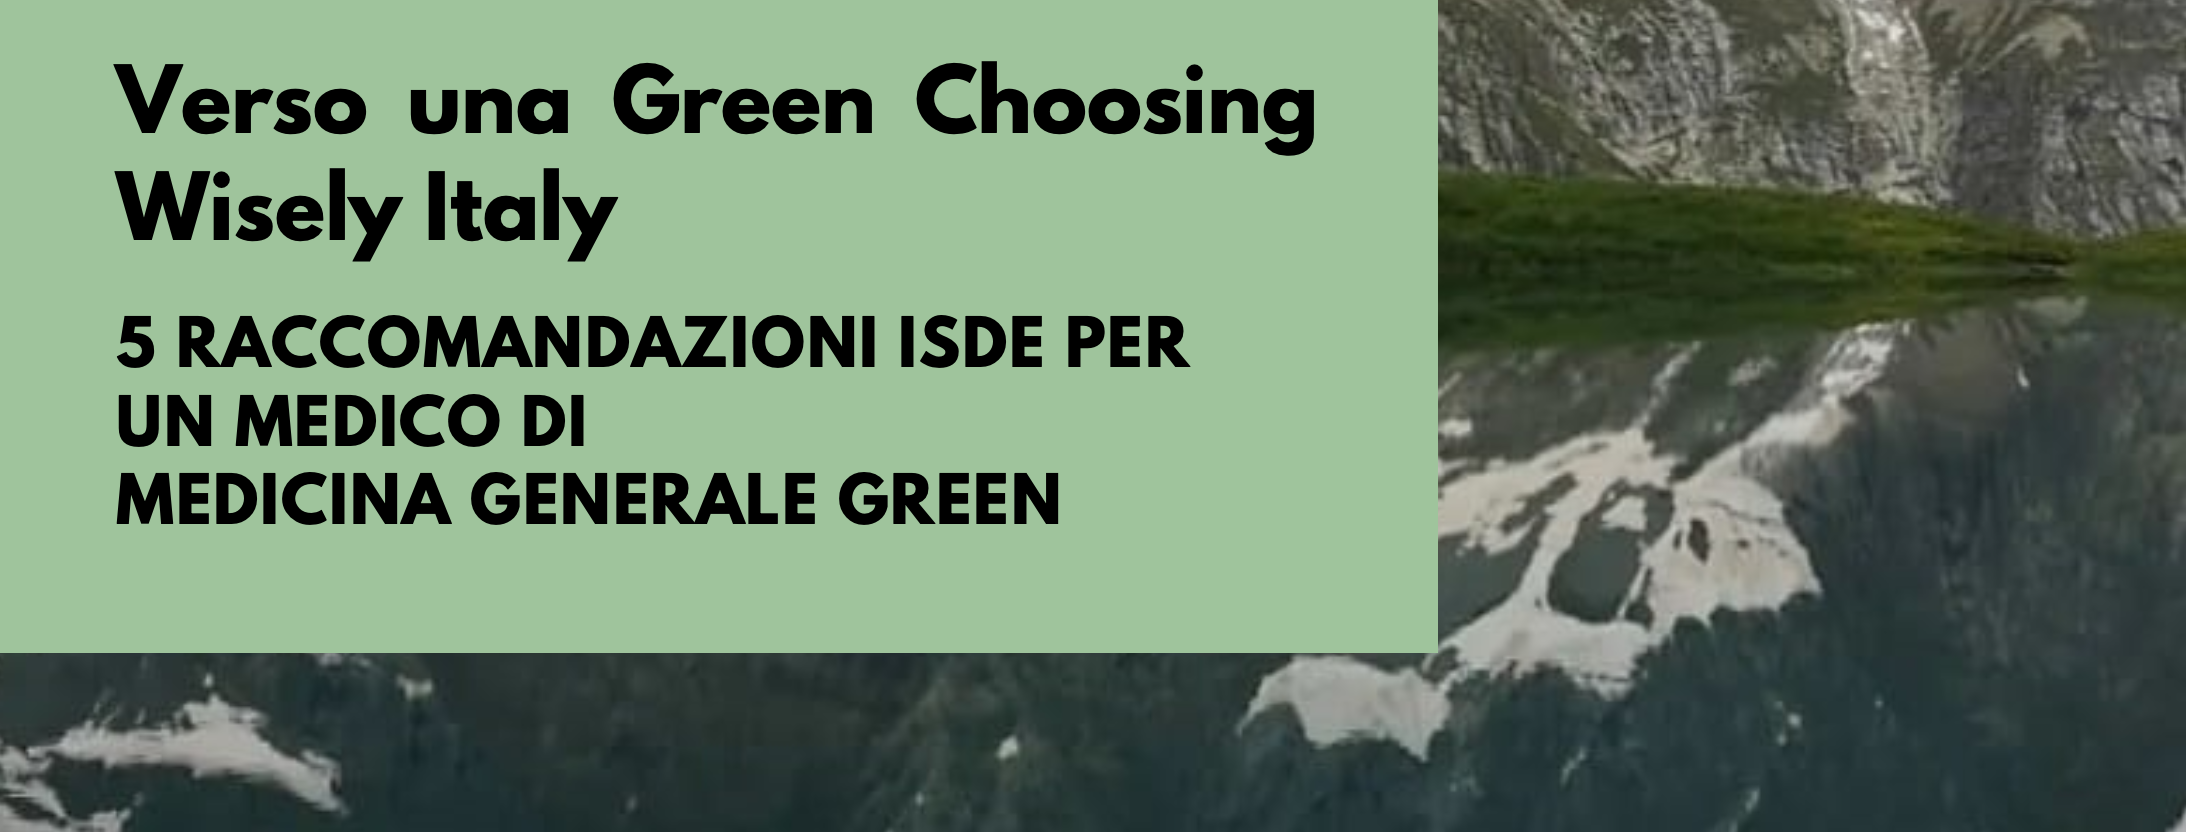 Verso una Green Choosing Wisely